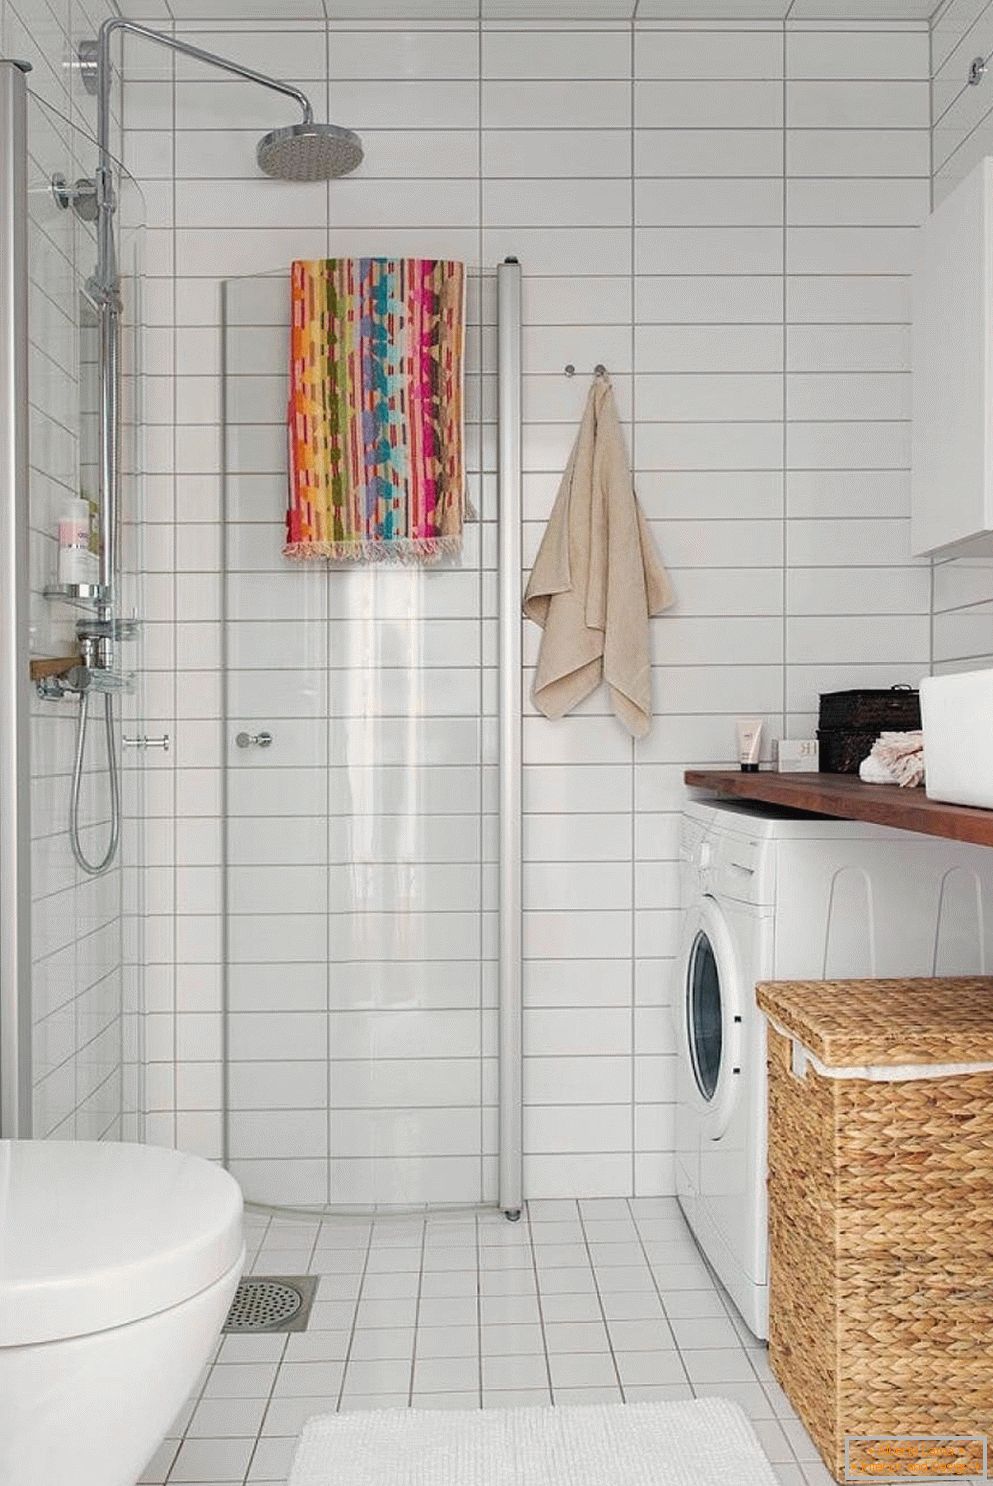 Cabine de duche com portas sanfonadas